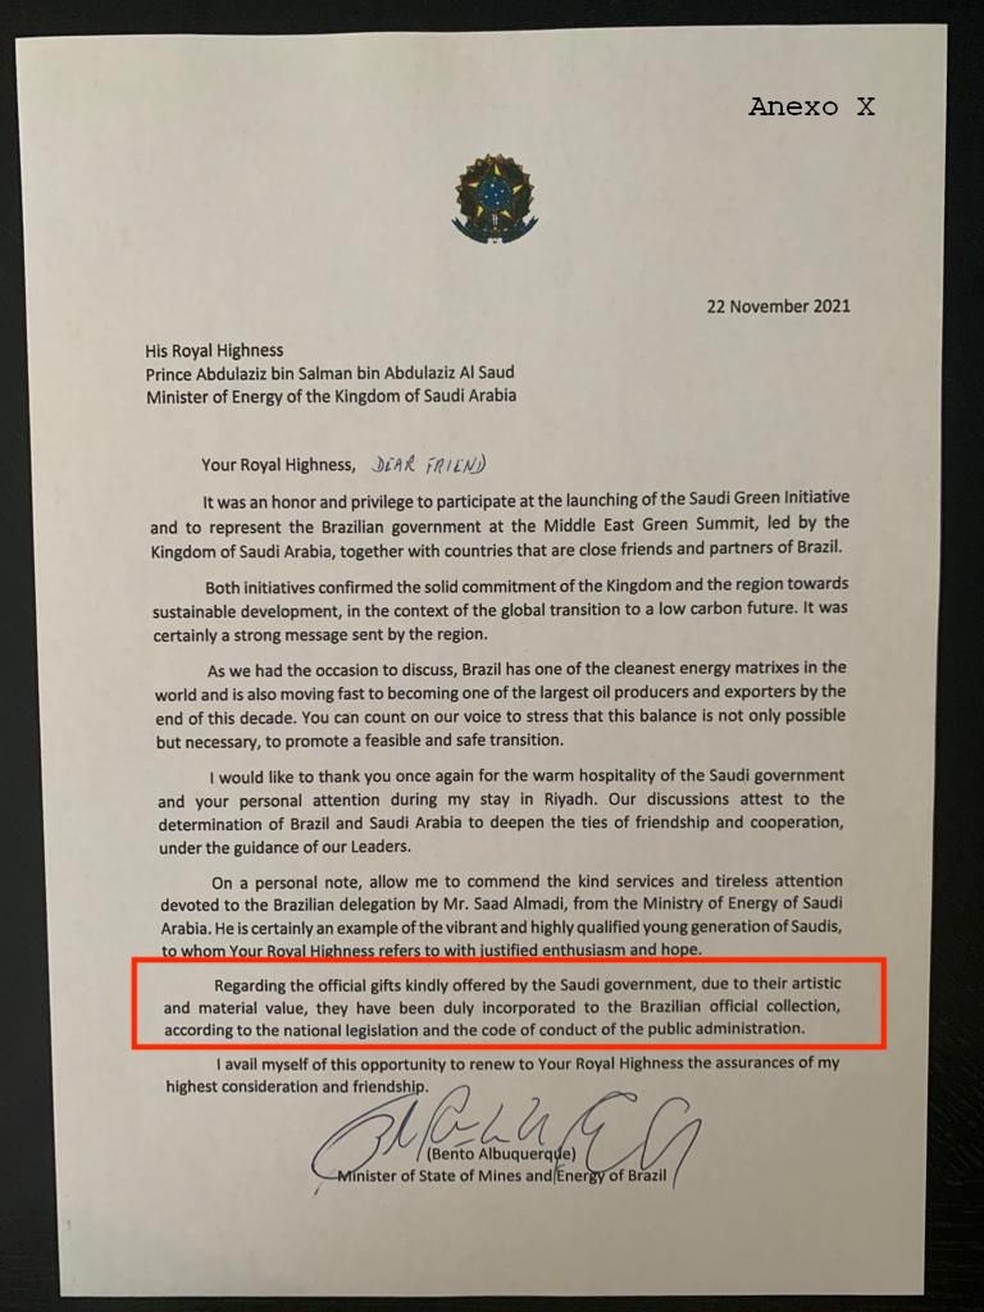 Carta de Bento Albuquerque a príncipe árabe diz que presentes foram incorporados a acervo presidencial, o que não havia ocorrido — Foto: Reprodução